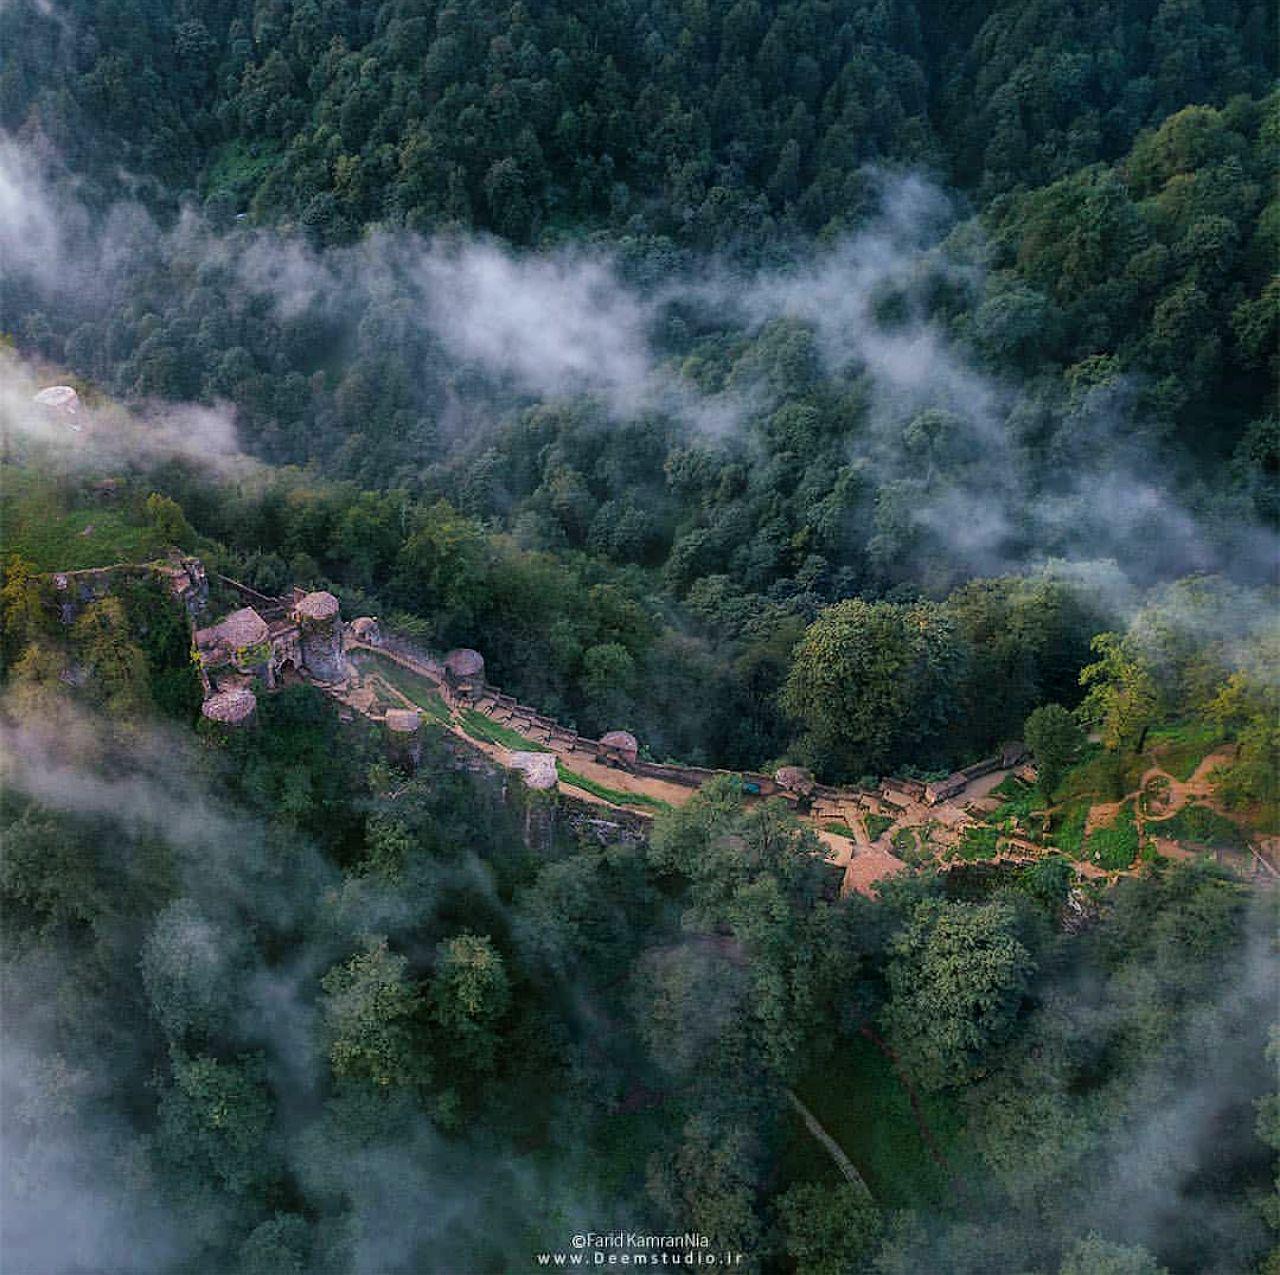 تصویر/ نمایی فوق العاده از قلعه رودخان فومن